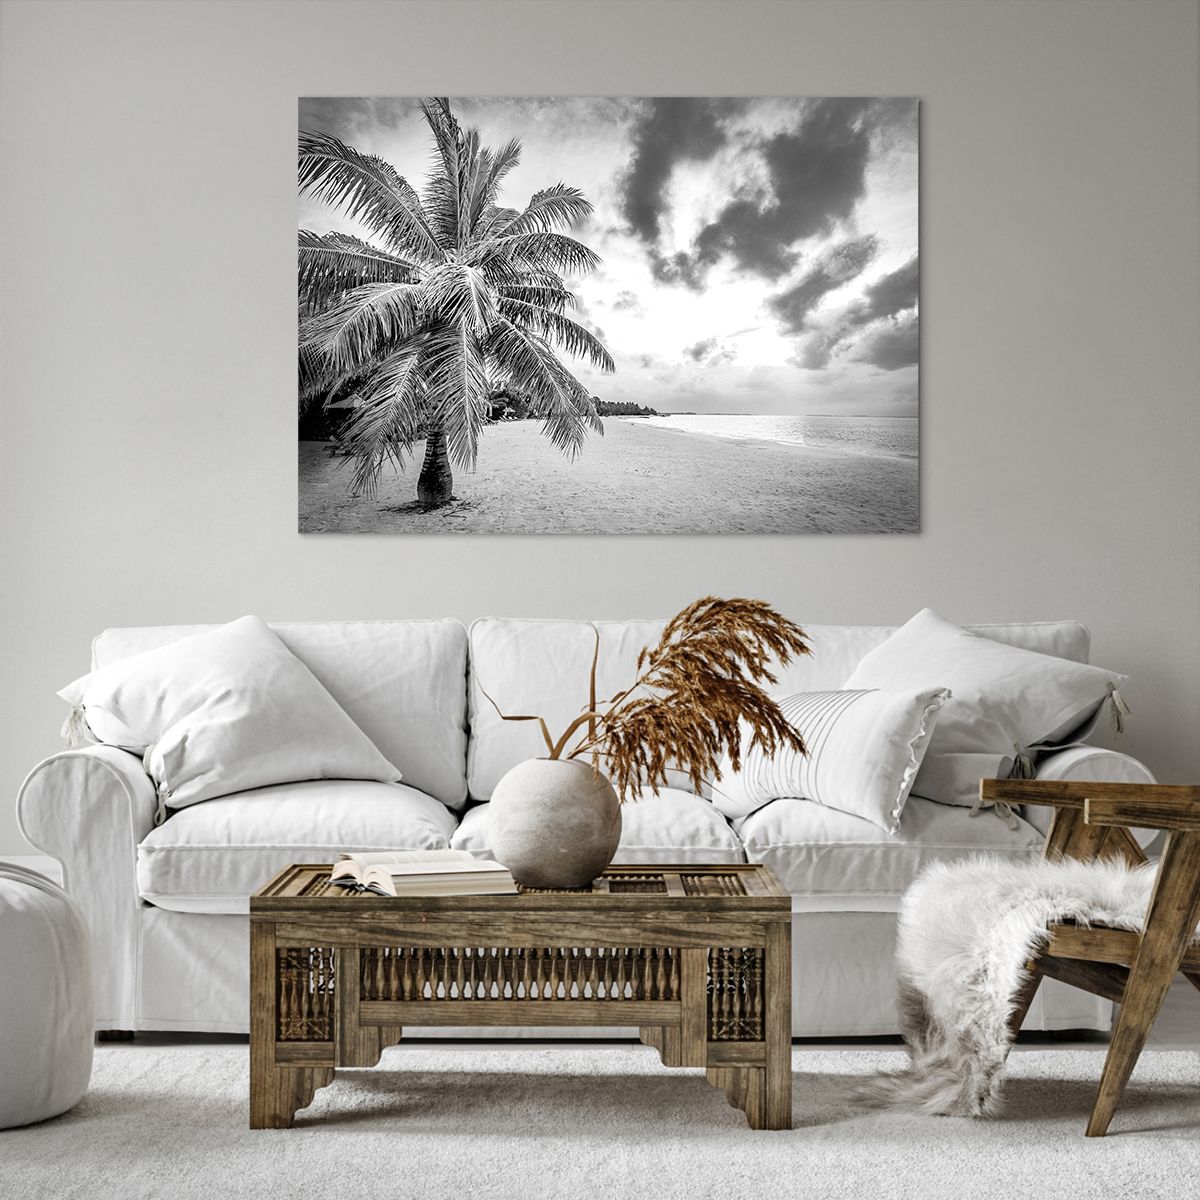 Bild auf Leinwand Landschaft, Bild auf Leinwand Strand, Bild auf Leinwand Ozean, Bild auf Leinwand Natur, Bild auf Leinwand Kokusnuss-Palme